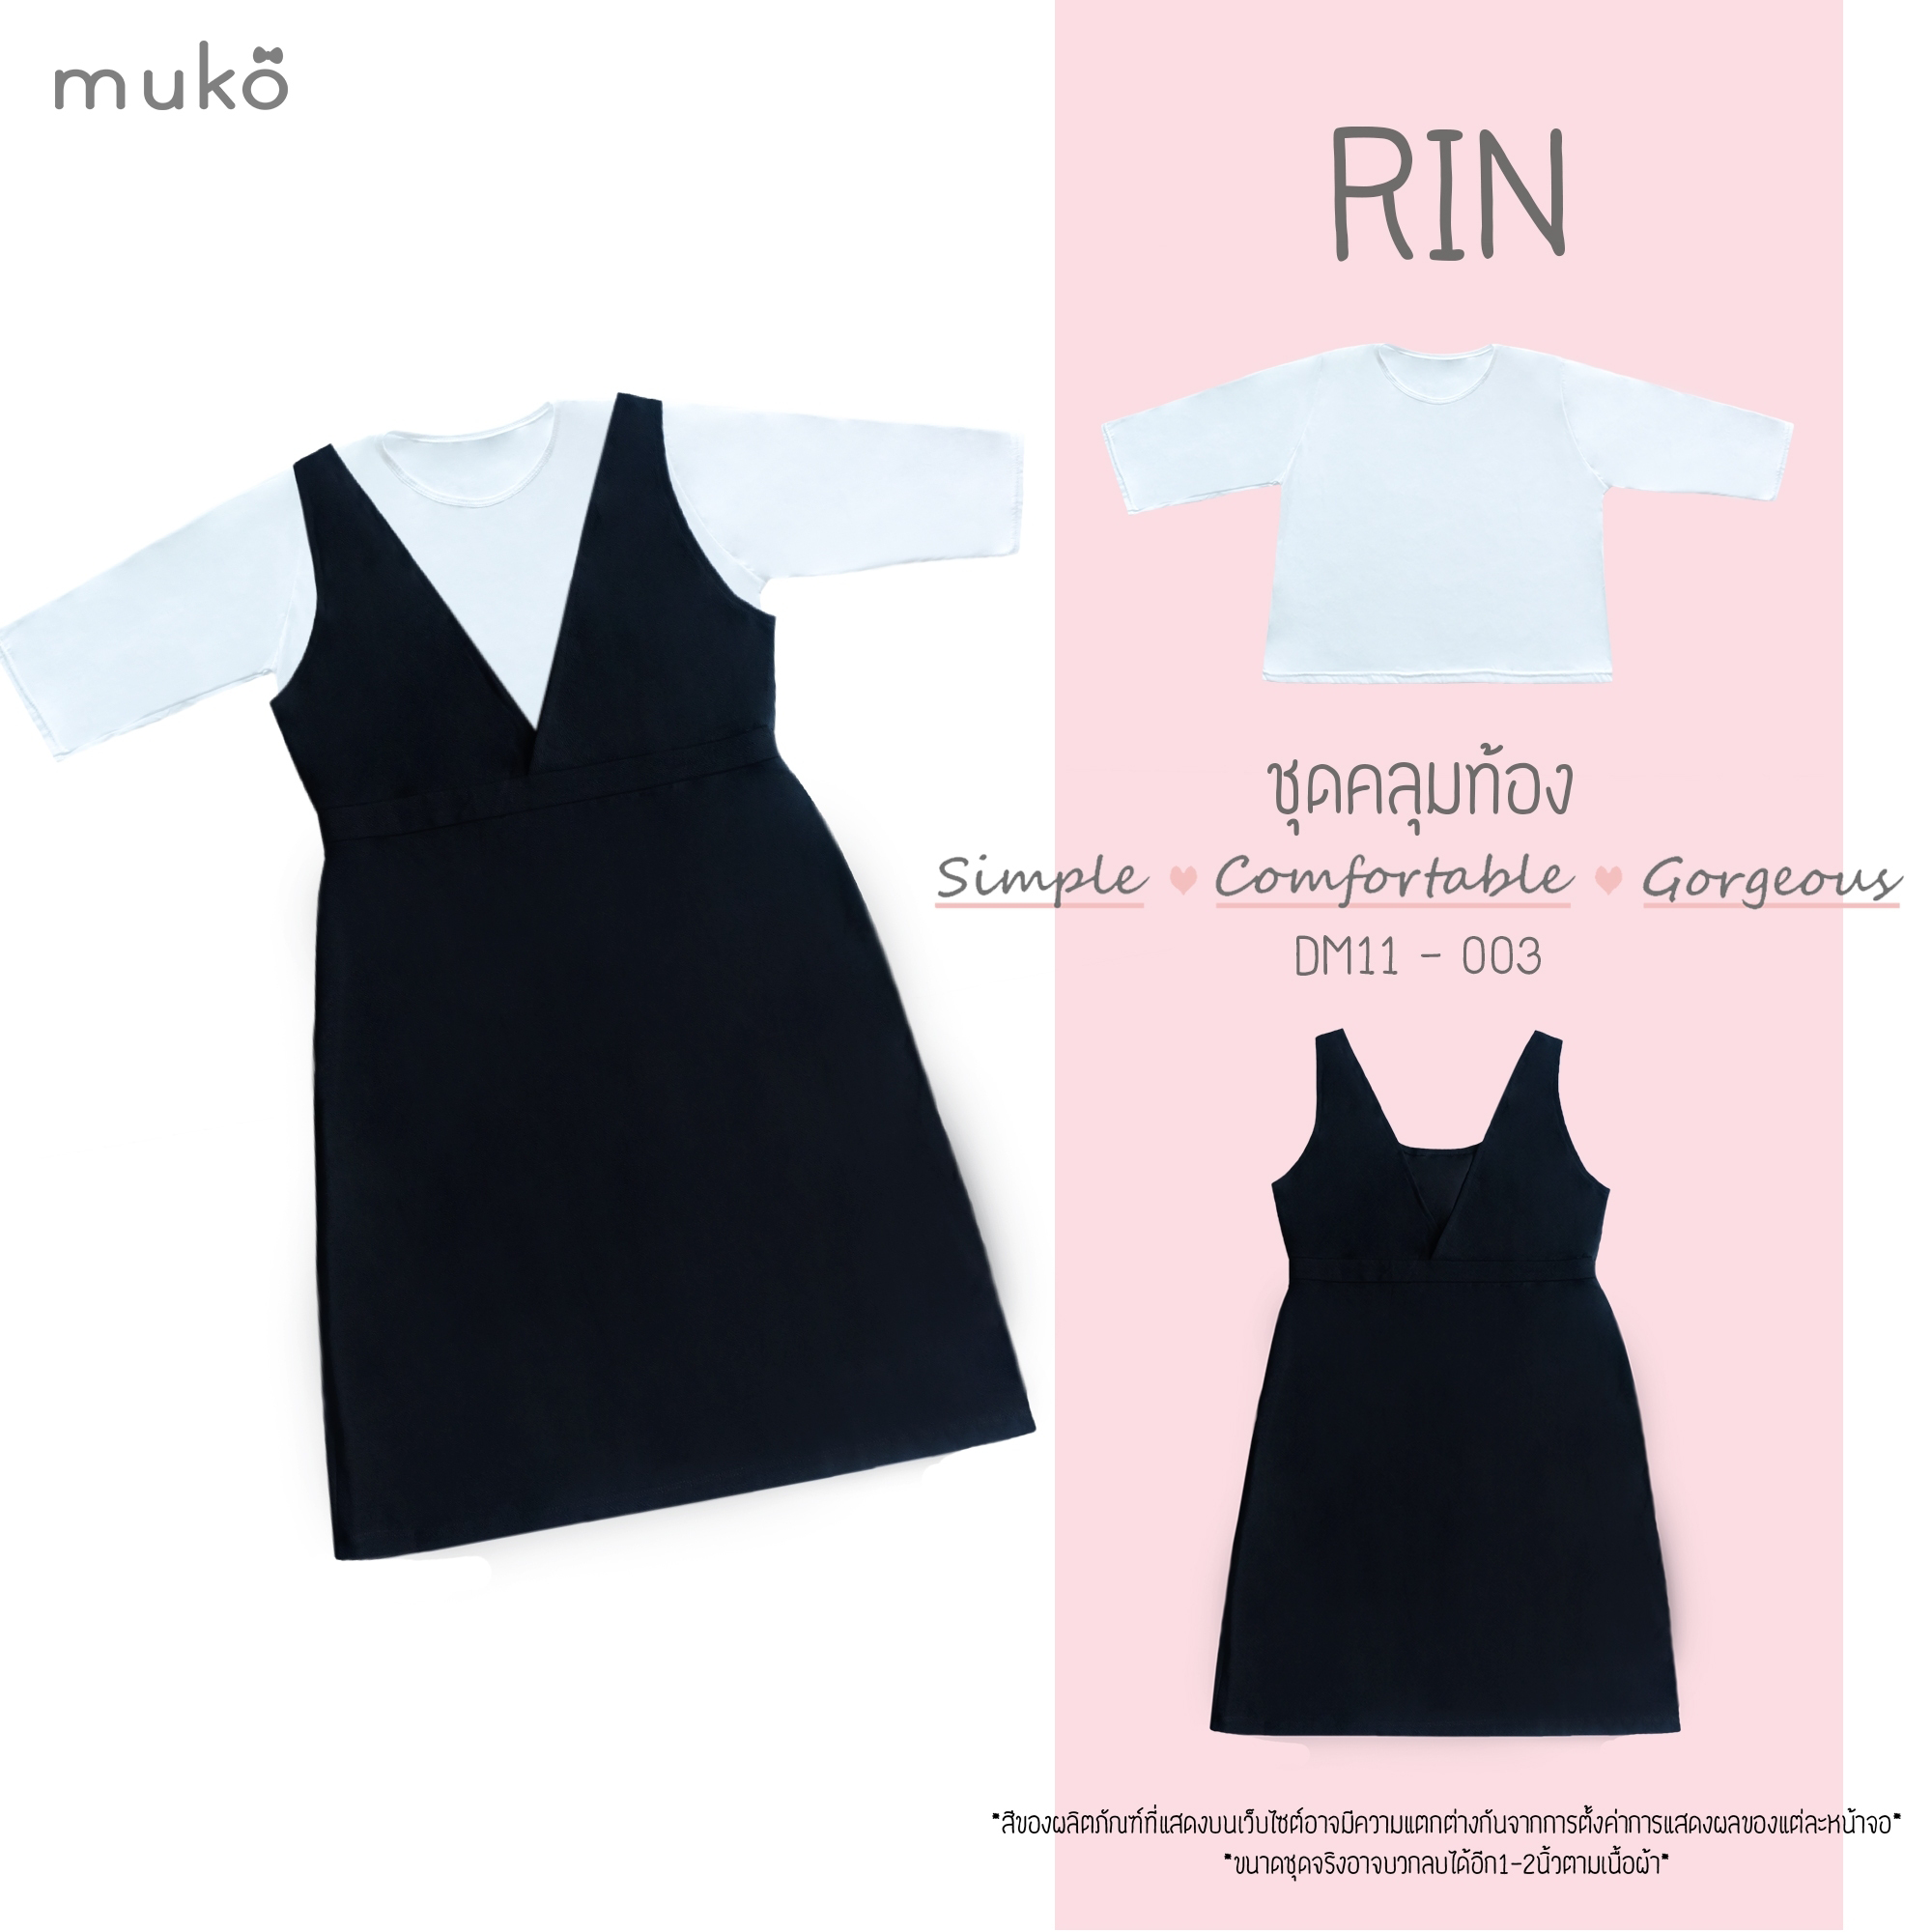 Muko Rin ชุดเซ็ต (เสื้อและกระโปรงเอี๊ยม) คลุมท้องหรือจะใส่แฟชั่นสวยๆก็ได้นะคะ DM11-003 สีดำ